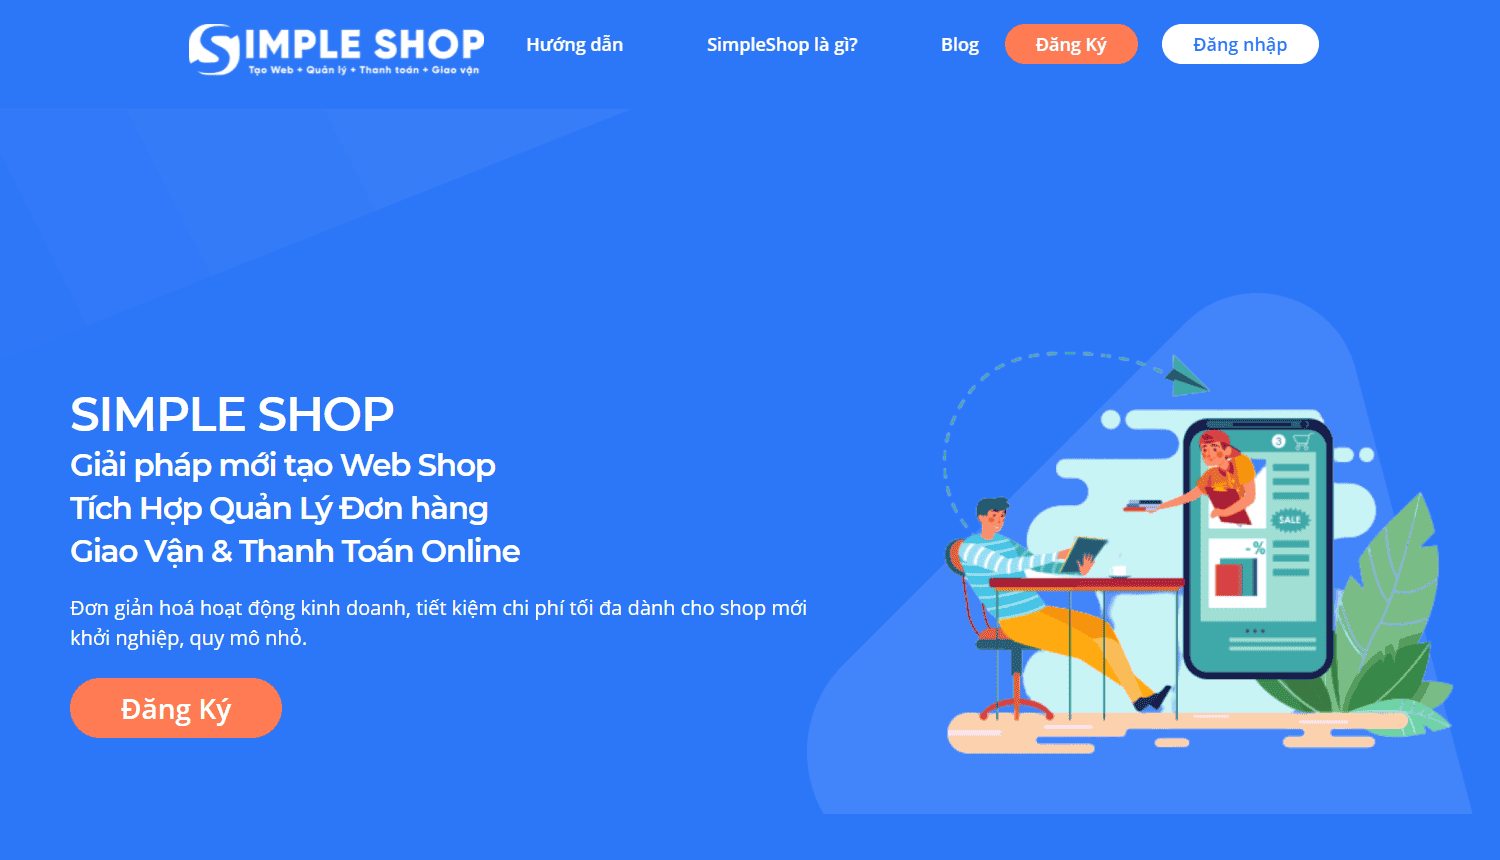 Tính năng của SimpleShop rất phù hợp cho cửa hàng, quán ăn,...